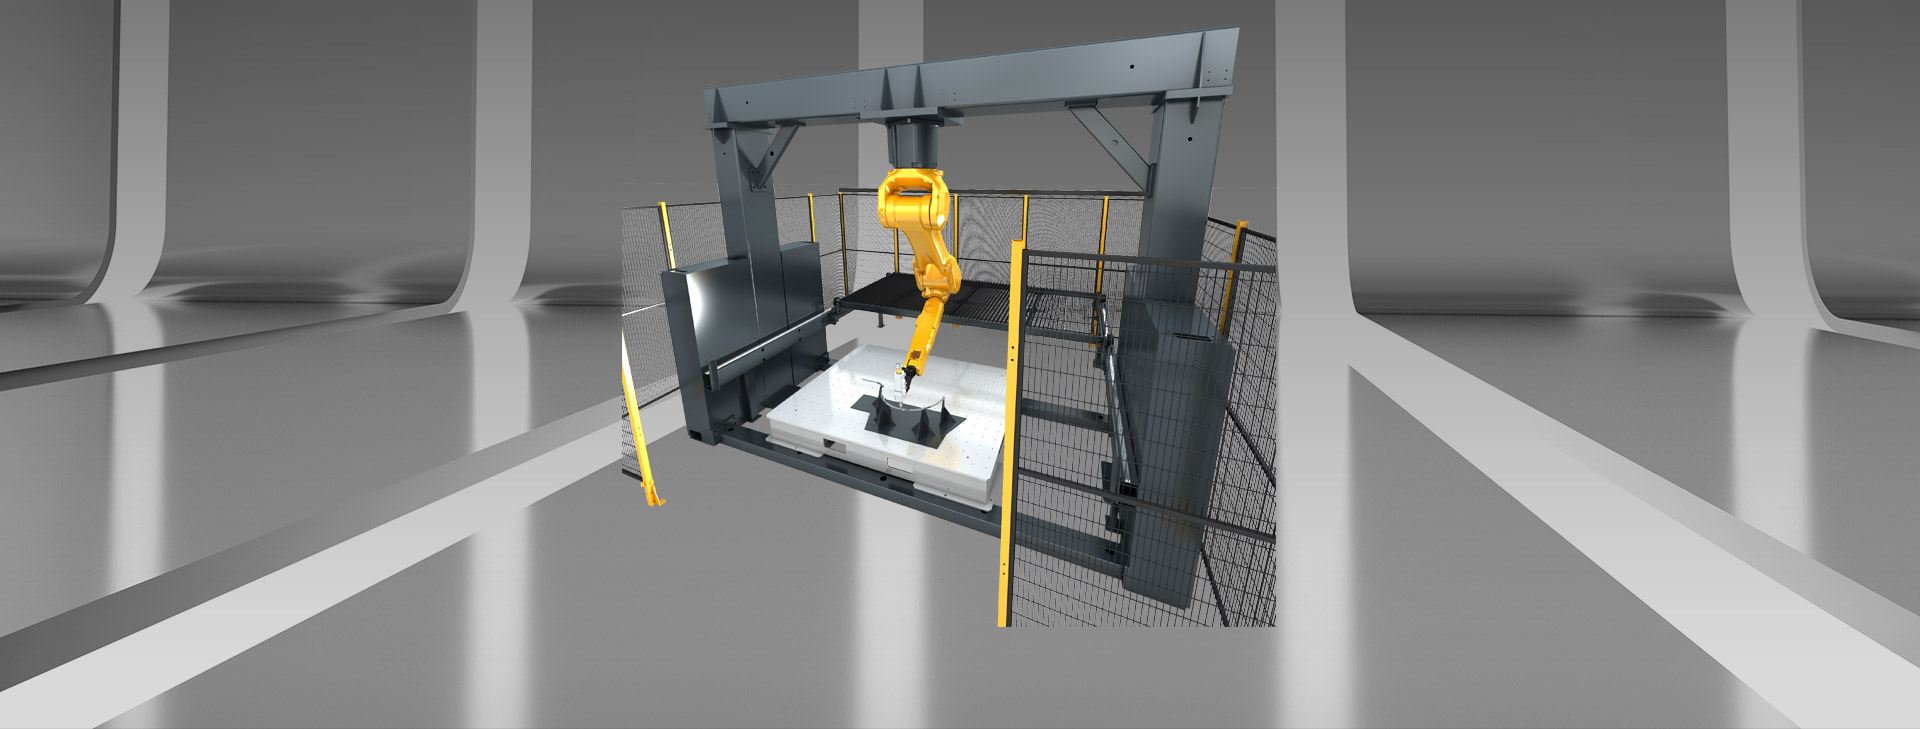 Máquina de corte a laser robô 3D com estrutura de pórtico